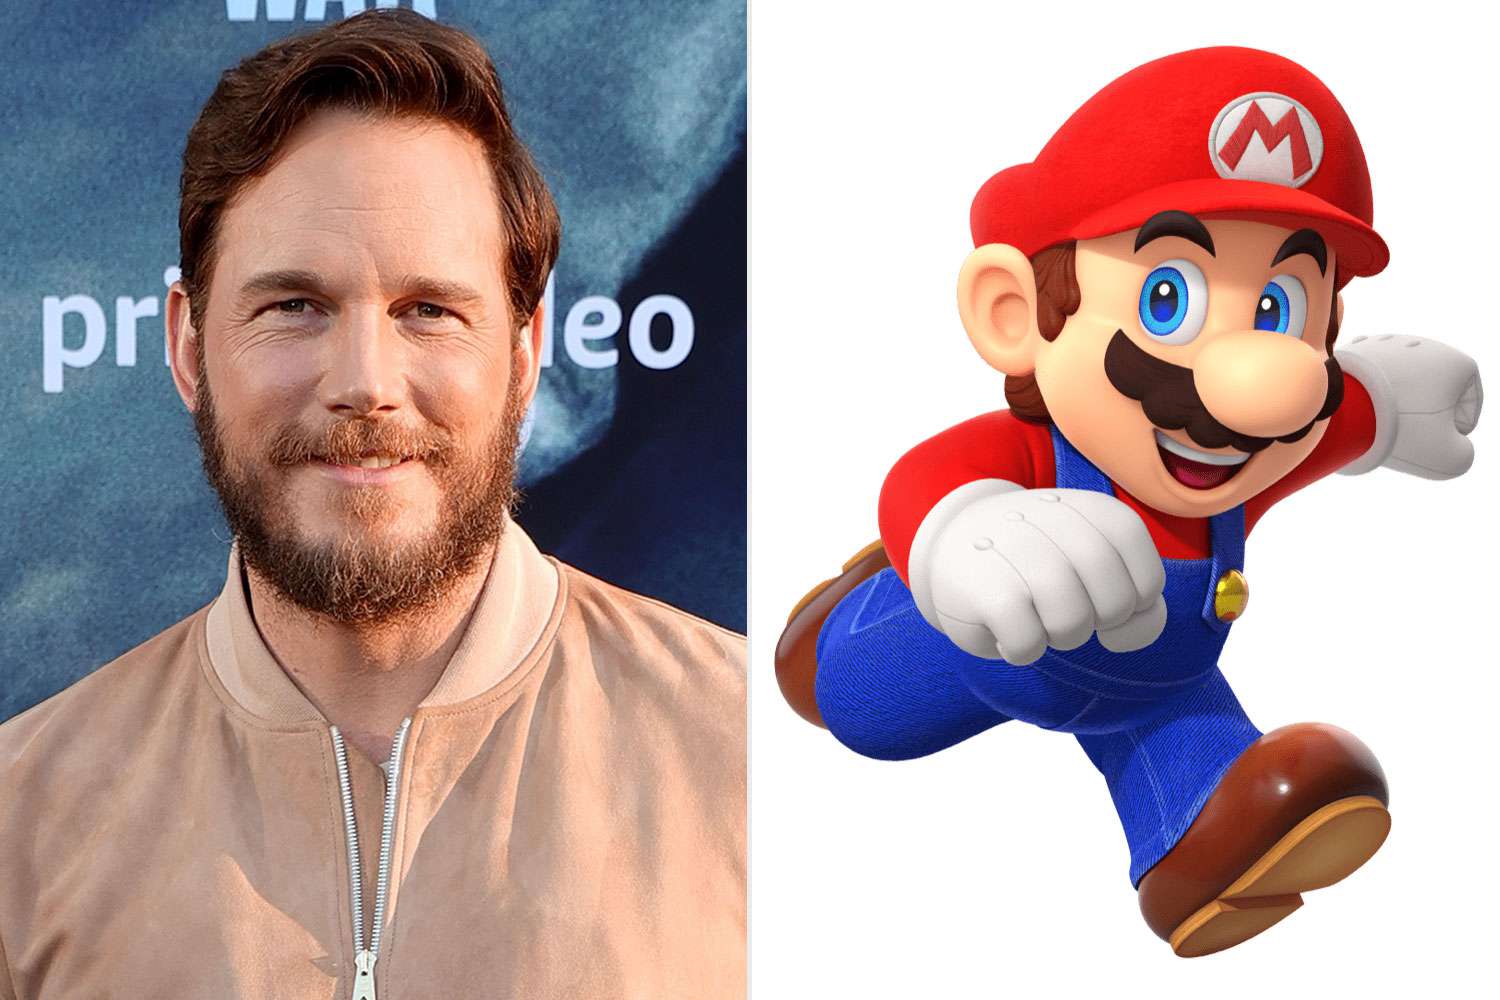 Pratt Calendar 2022 Super Mario Bros. Producer Defends Casting Chris Pratt | People.com